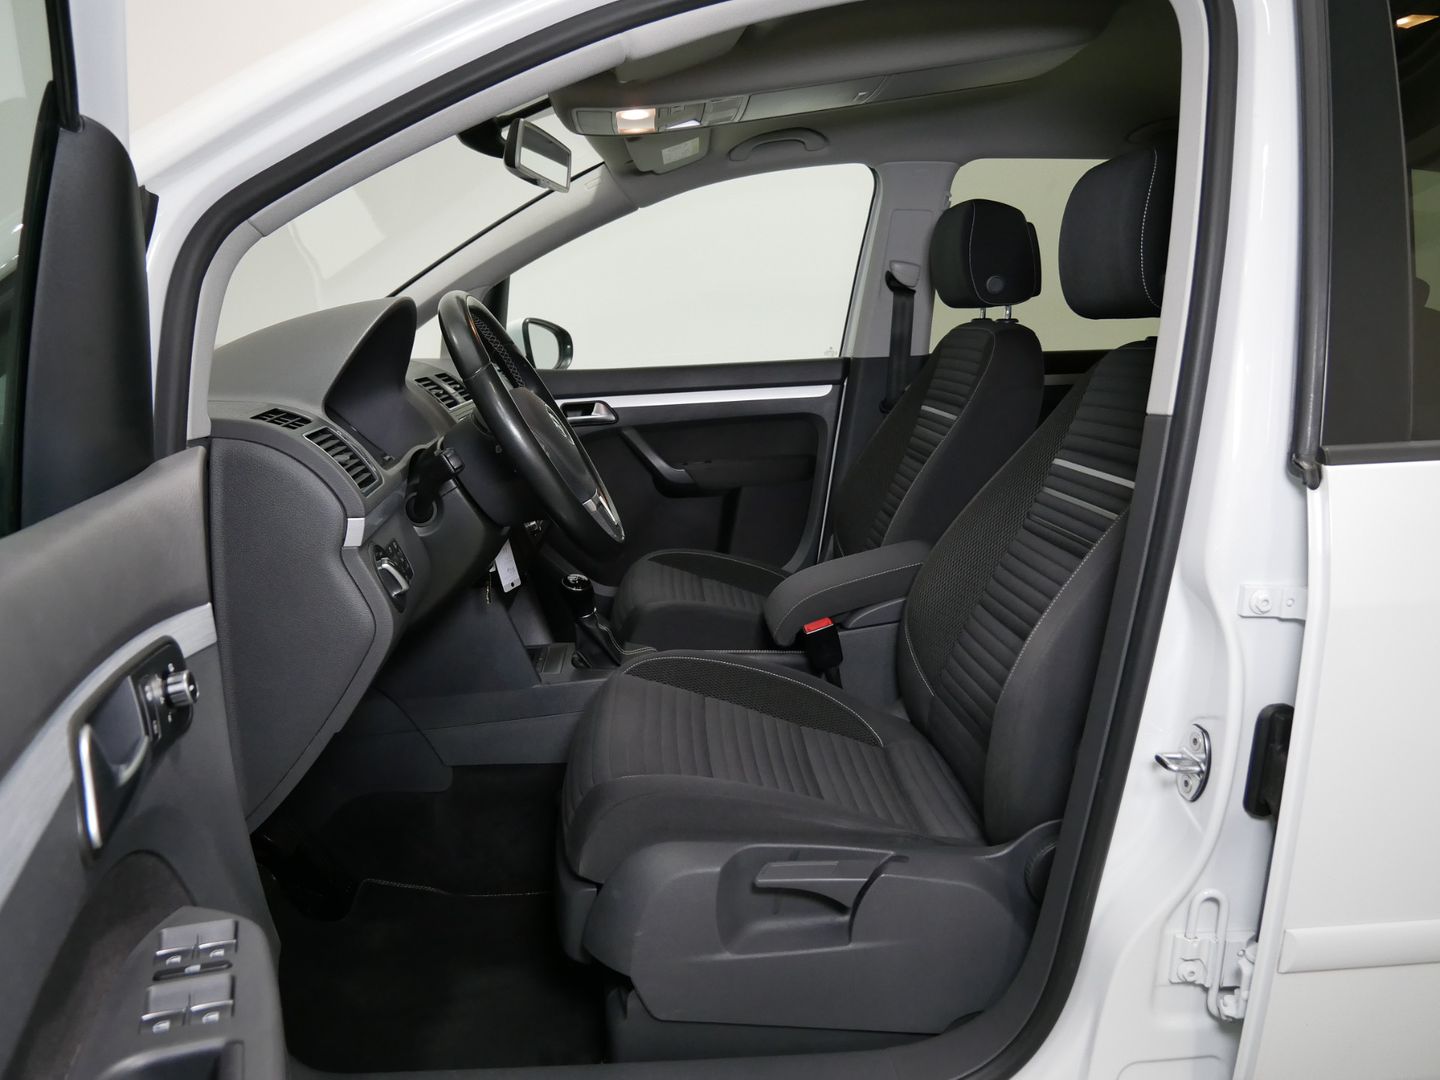 Volkswagen Touran 1.2 TSI 81 kW Comfort